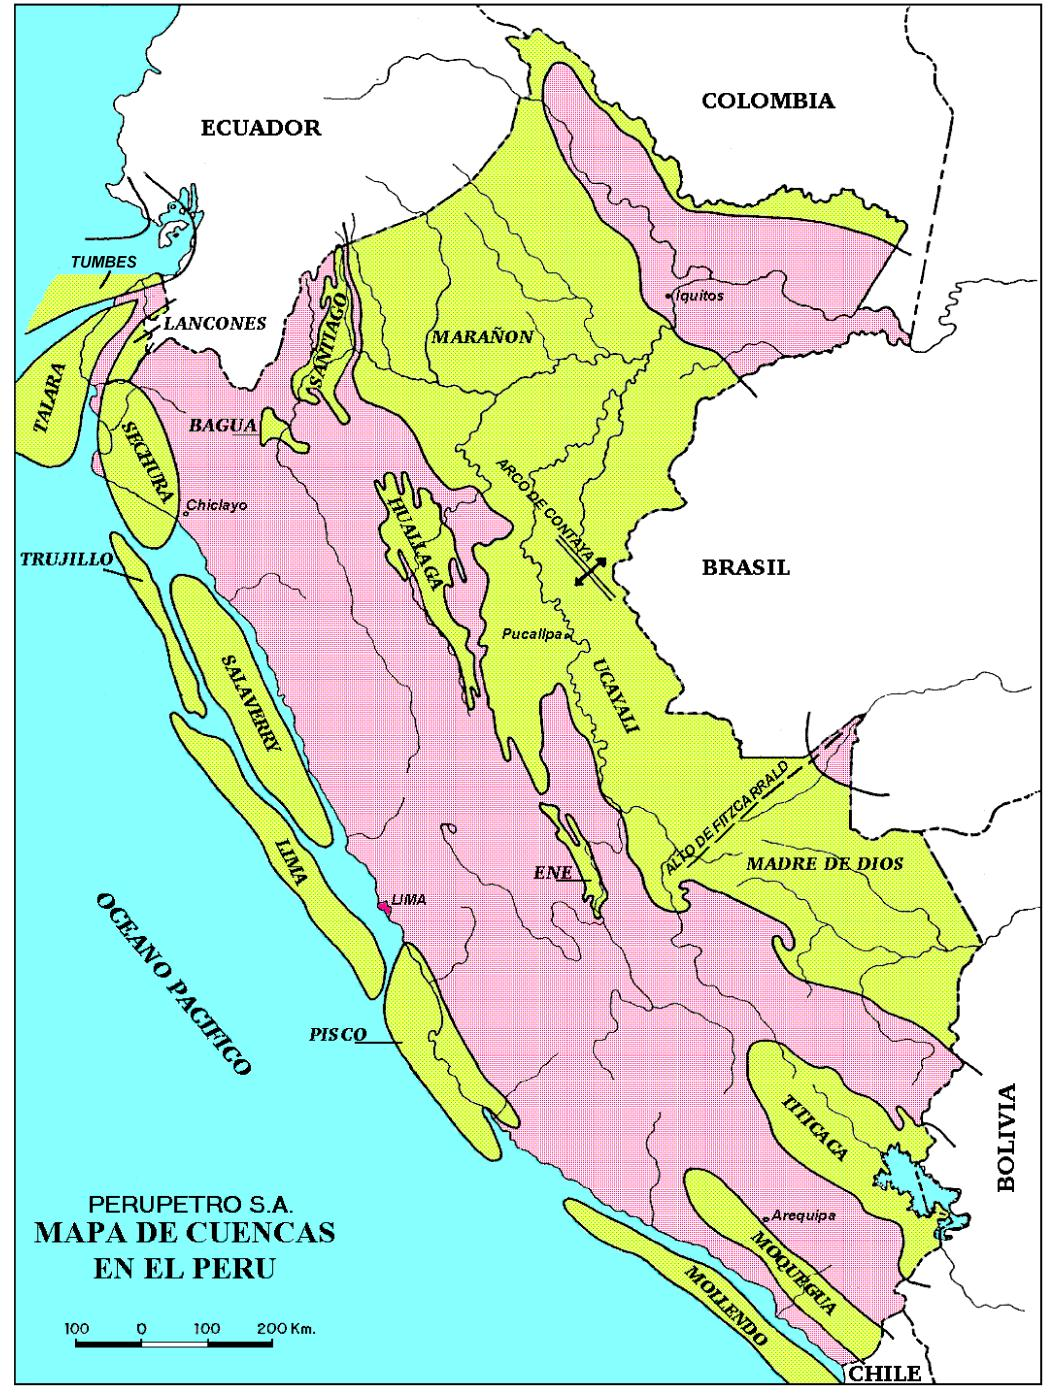 Cuencas Sedimentarias del Perú 18 cuencas con potencial para exploración por hidrocarburos 83 millones